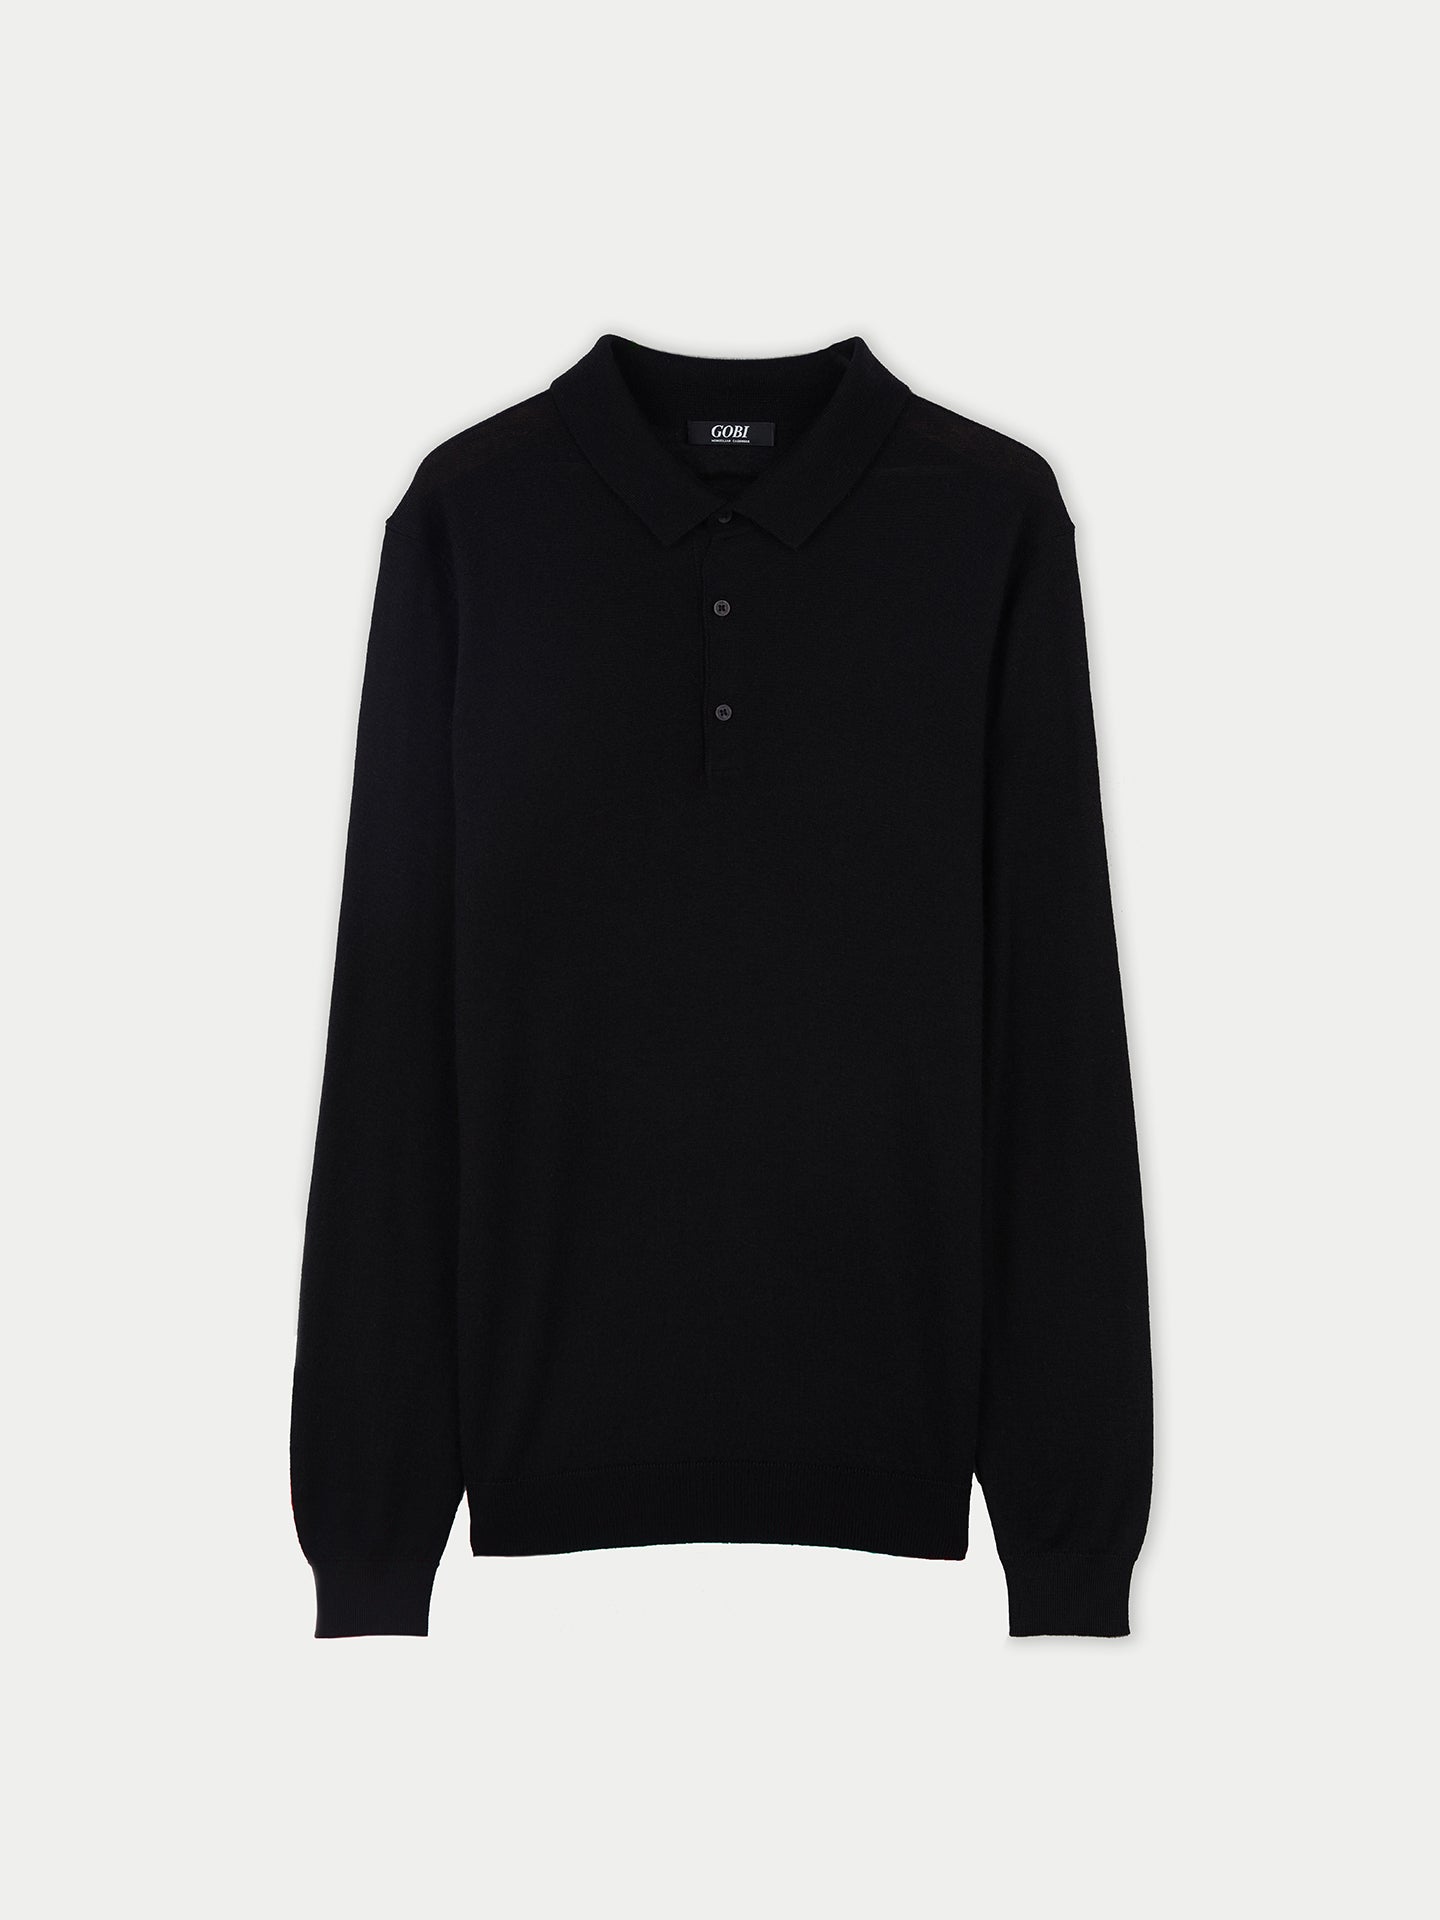 Quality Silk Cashmere Polo Shirt for Men | GOBI Cashmere